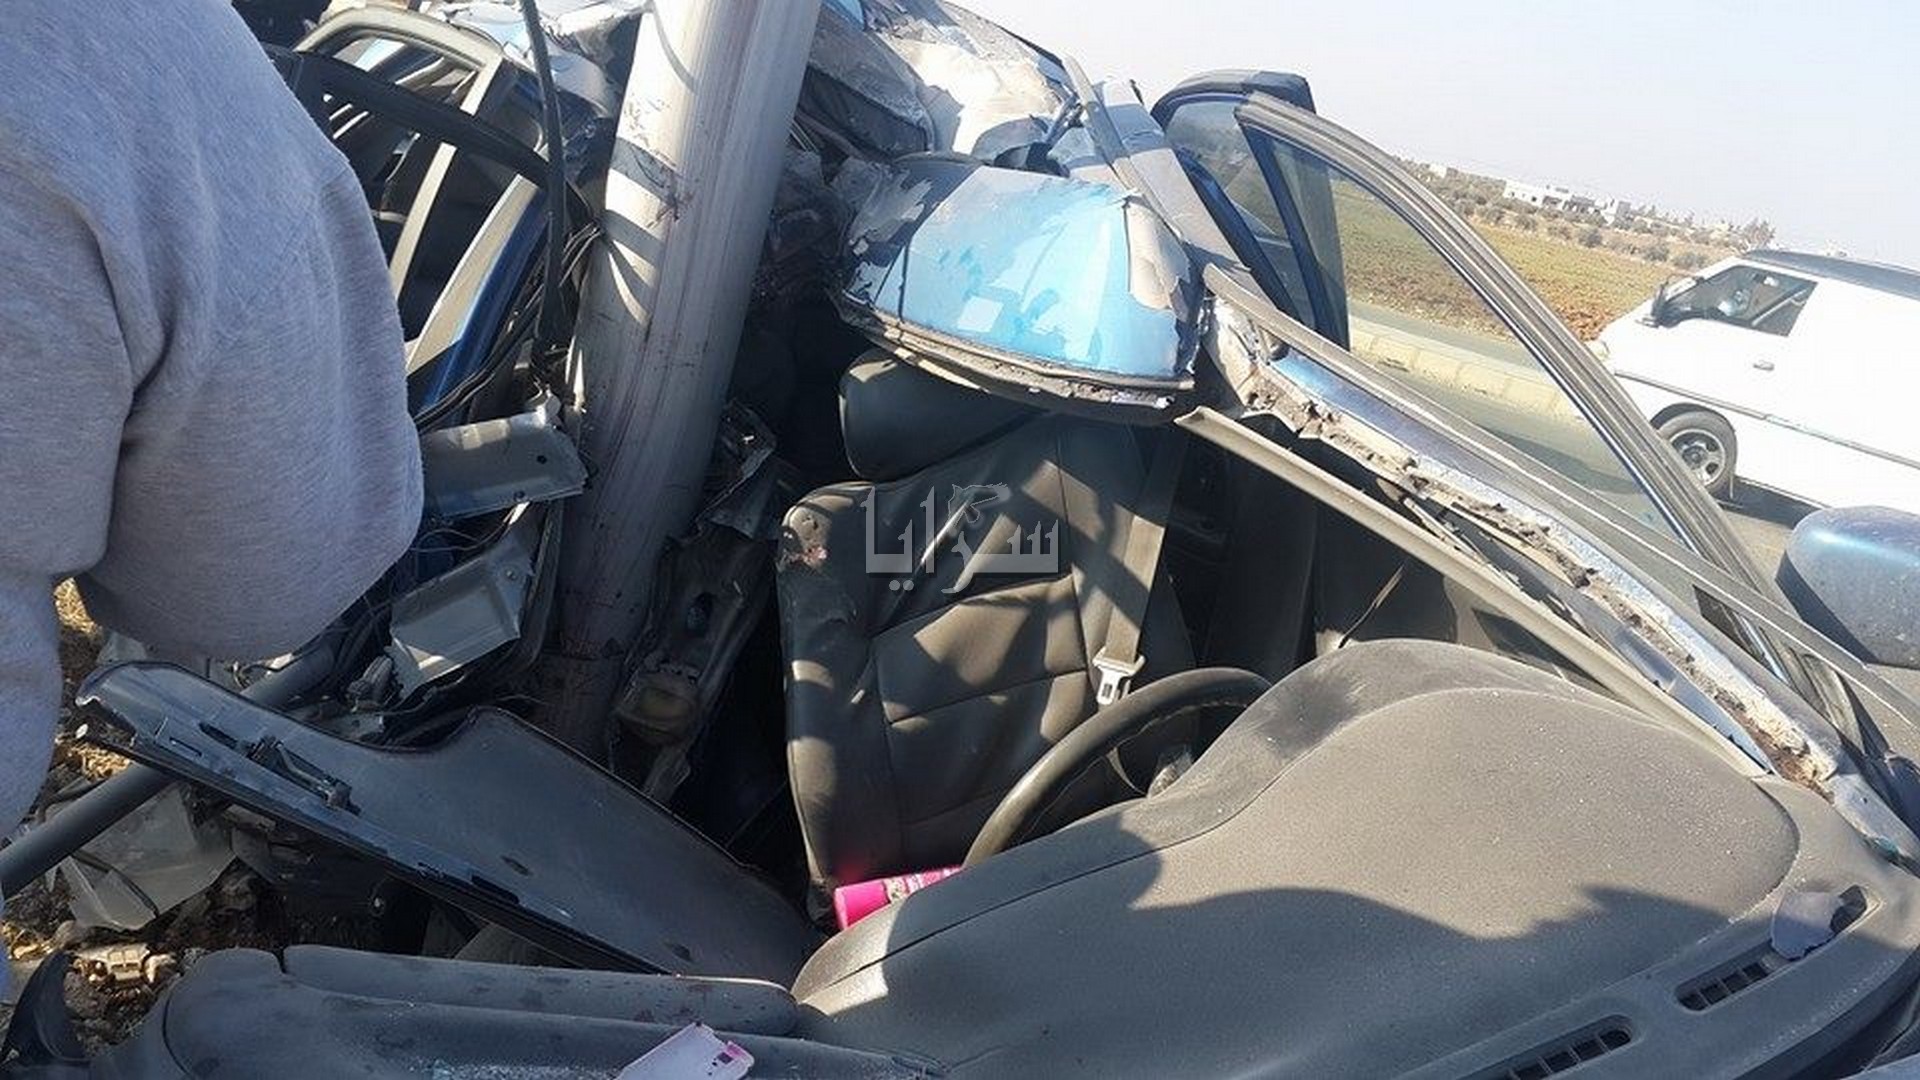 بالصور .. وفاة شخص  بحادث سير شنيع بشارع البترا في إربد